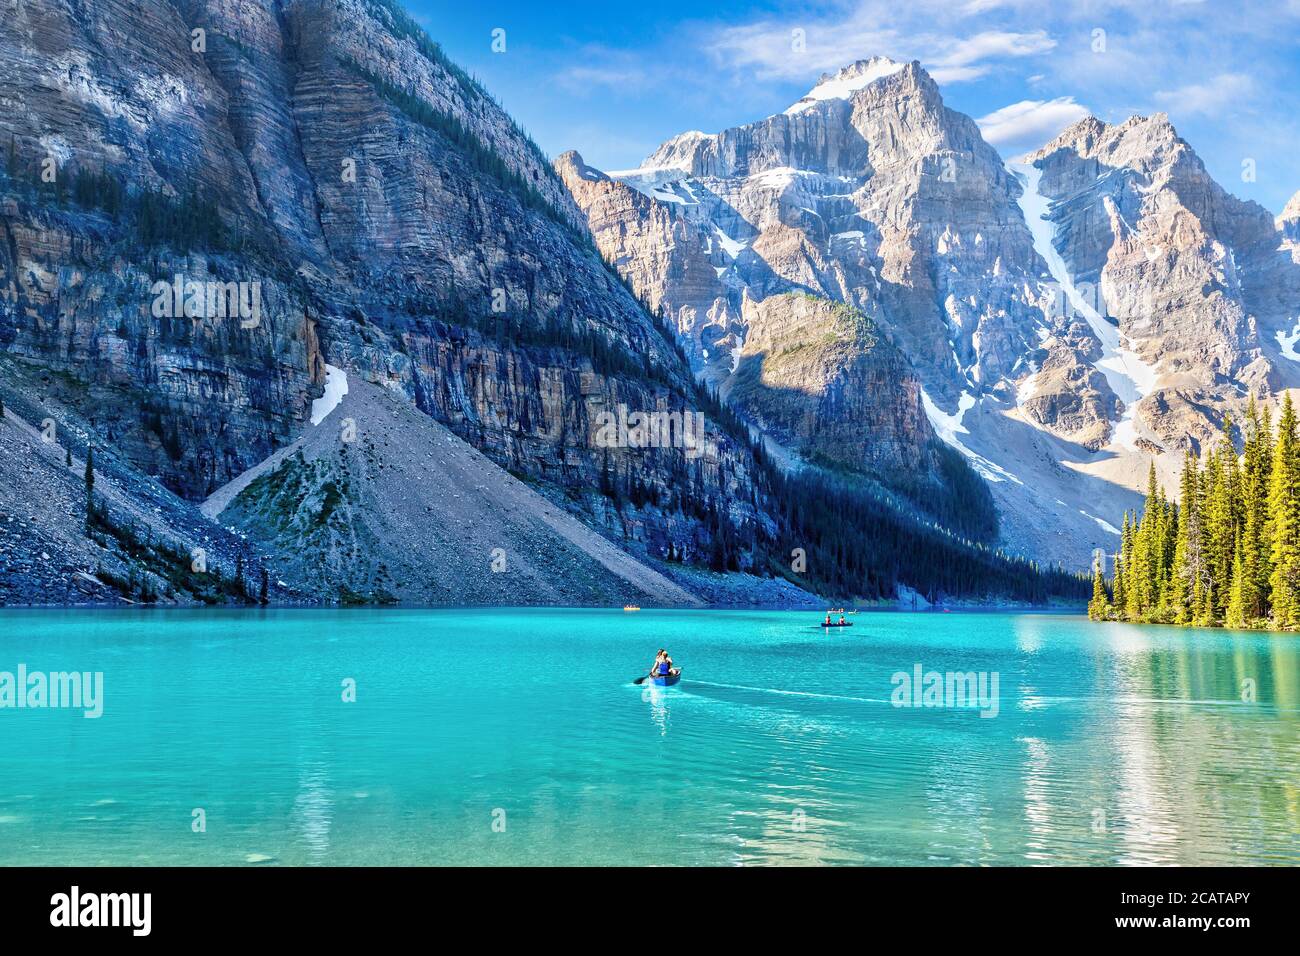 Des visiteurs non identifiables font du canoë sur leurs bateaux sur le lac Moraine de couleur turquoise dans les Rocheuses canadiennes du parc national Banff, près du lac Louise. Le va Banque D'Images